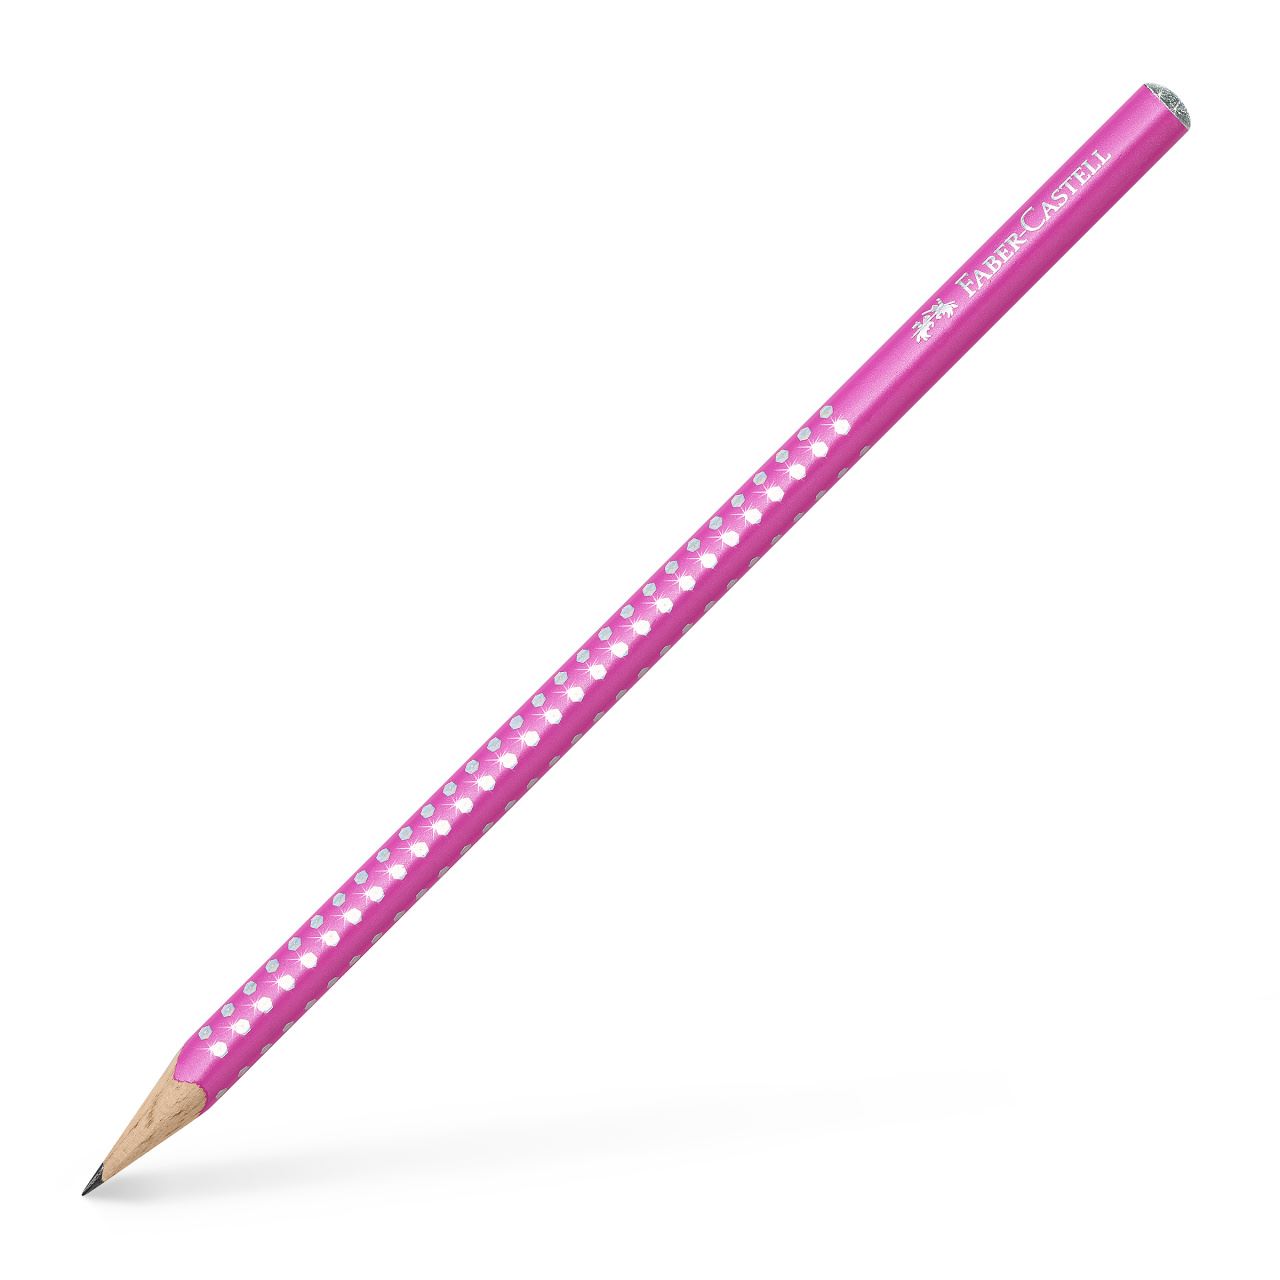 Faber-Castell - Grafitová tužka Sparkle, perleťově růžová